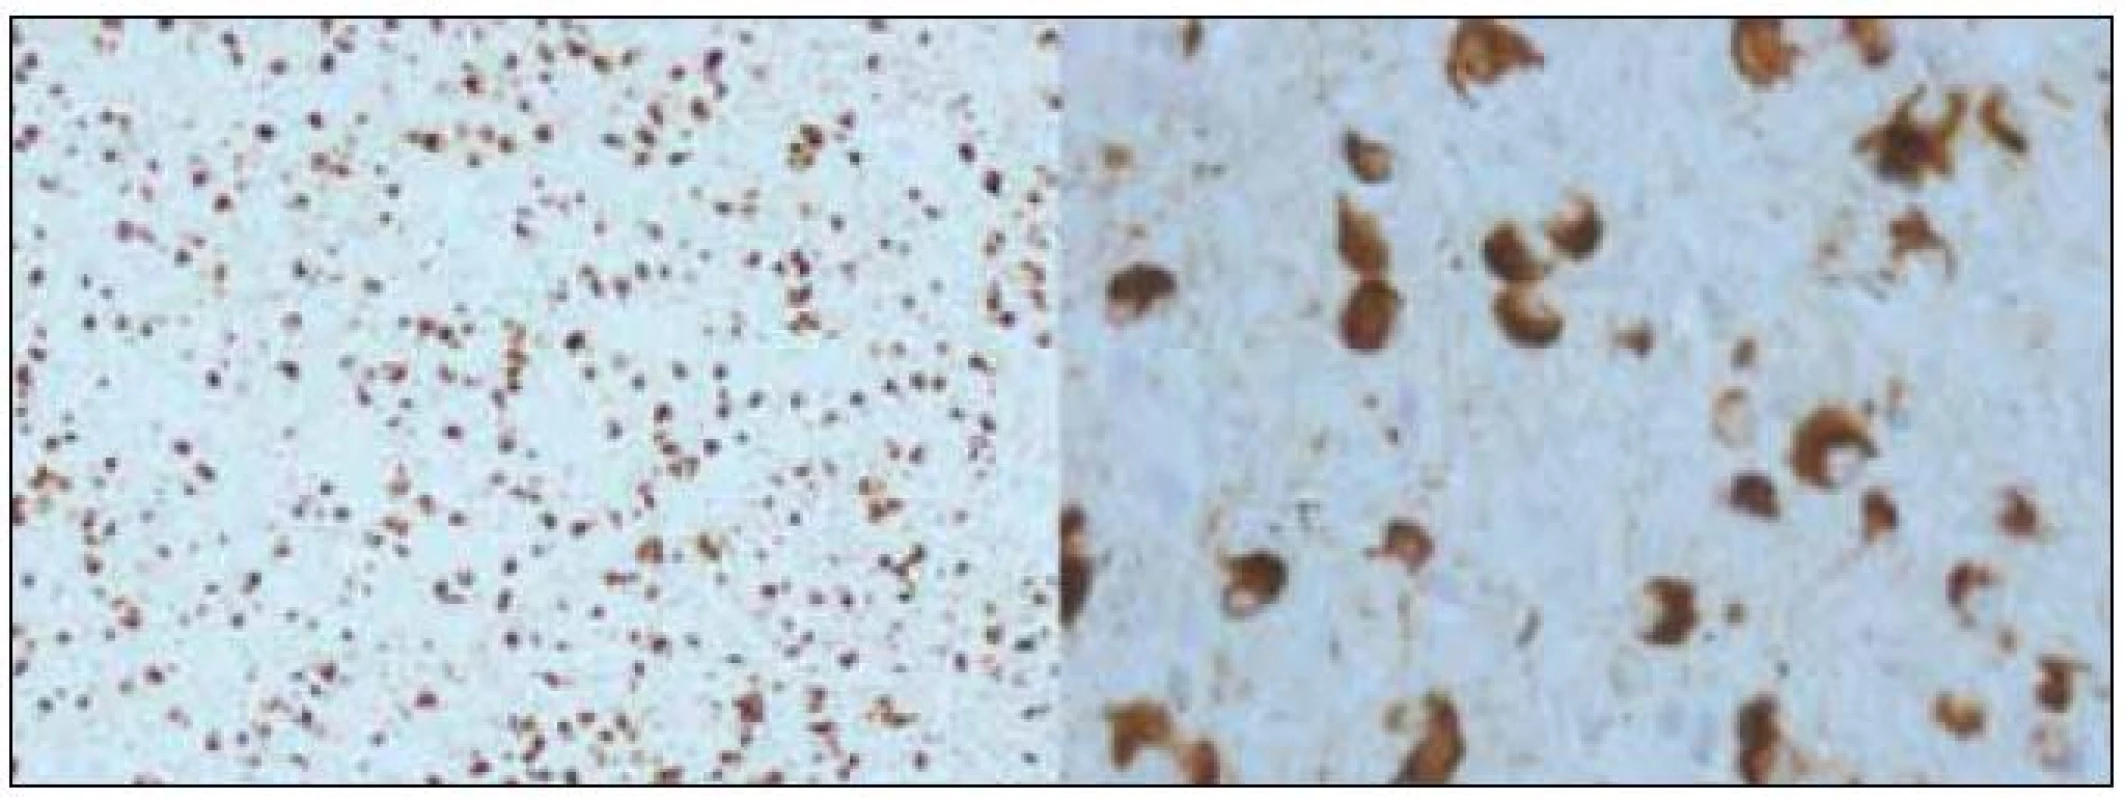 Alfa-synukleinopatie s argyrofilními oligodendrogliálními cytoplazmatickými inkluzemi, patologický obraz přiřazovaný k fenotypu multisystémové atrofie (zvětšení 100× a 400×).
&lt;sup&gt;©&lt;/sup&gt;Ústav patologie LF UP a FN Olomouc